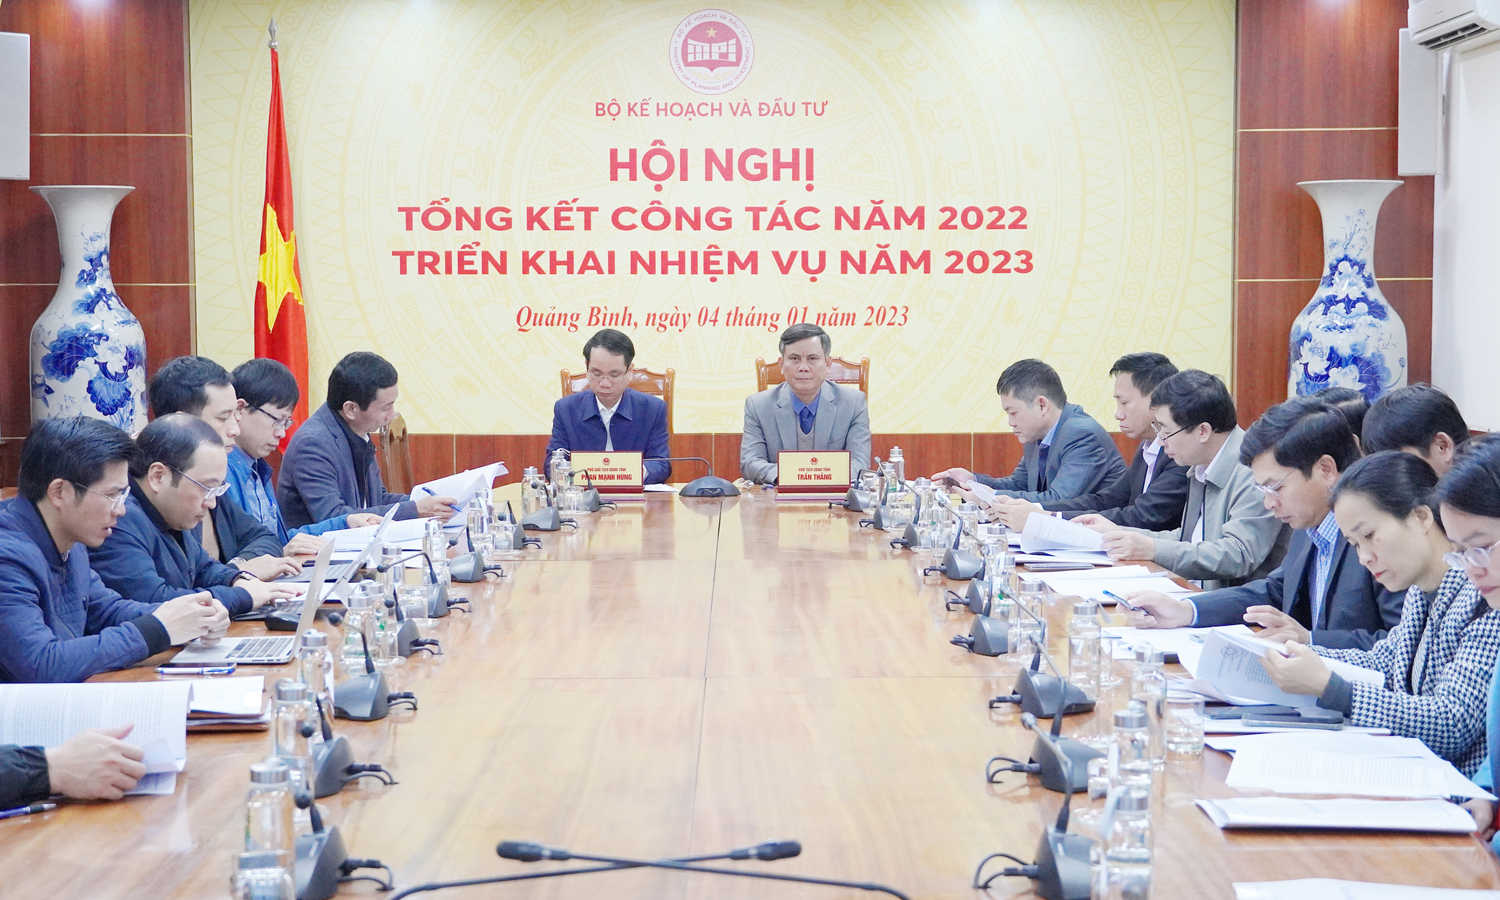 Bộ Kế hoạch và Đầu tư triển khai nhiệm vụ năm 2023